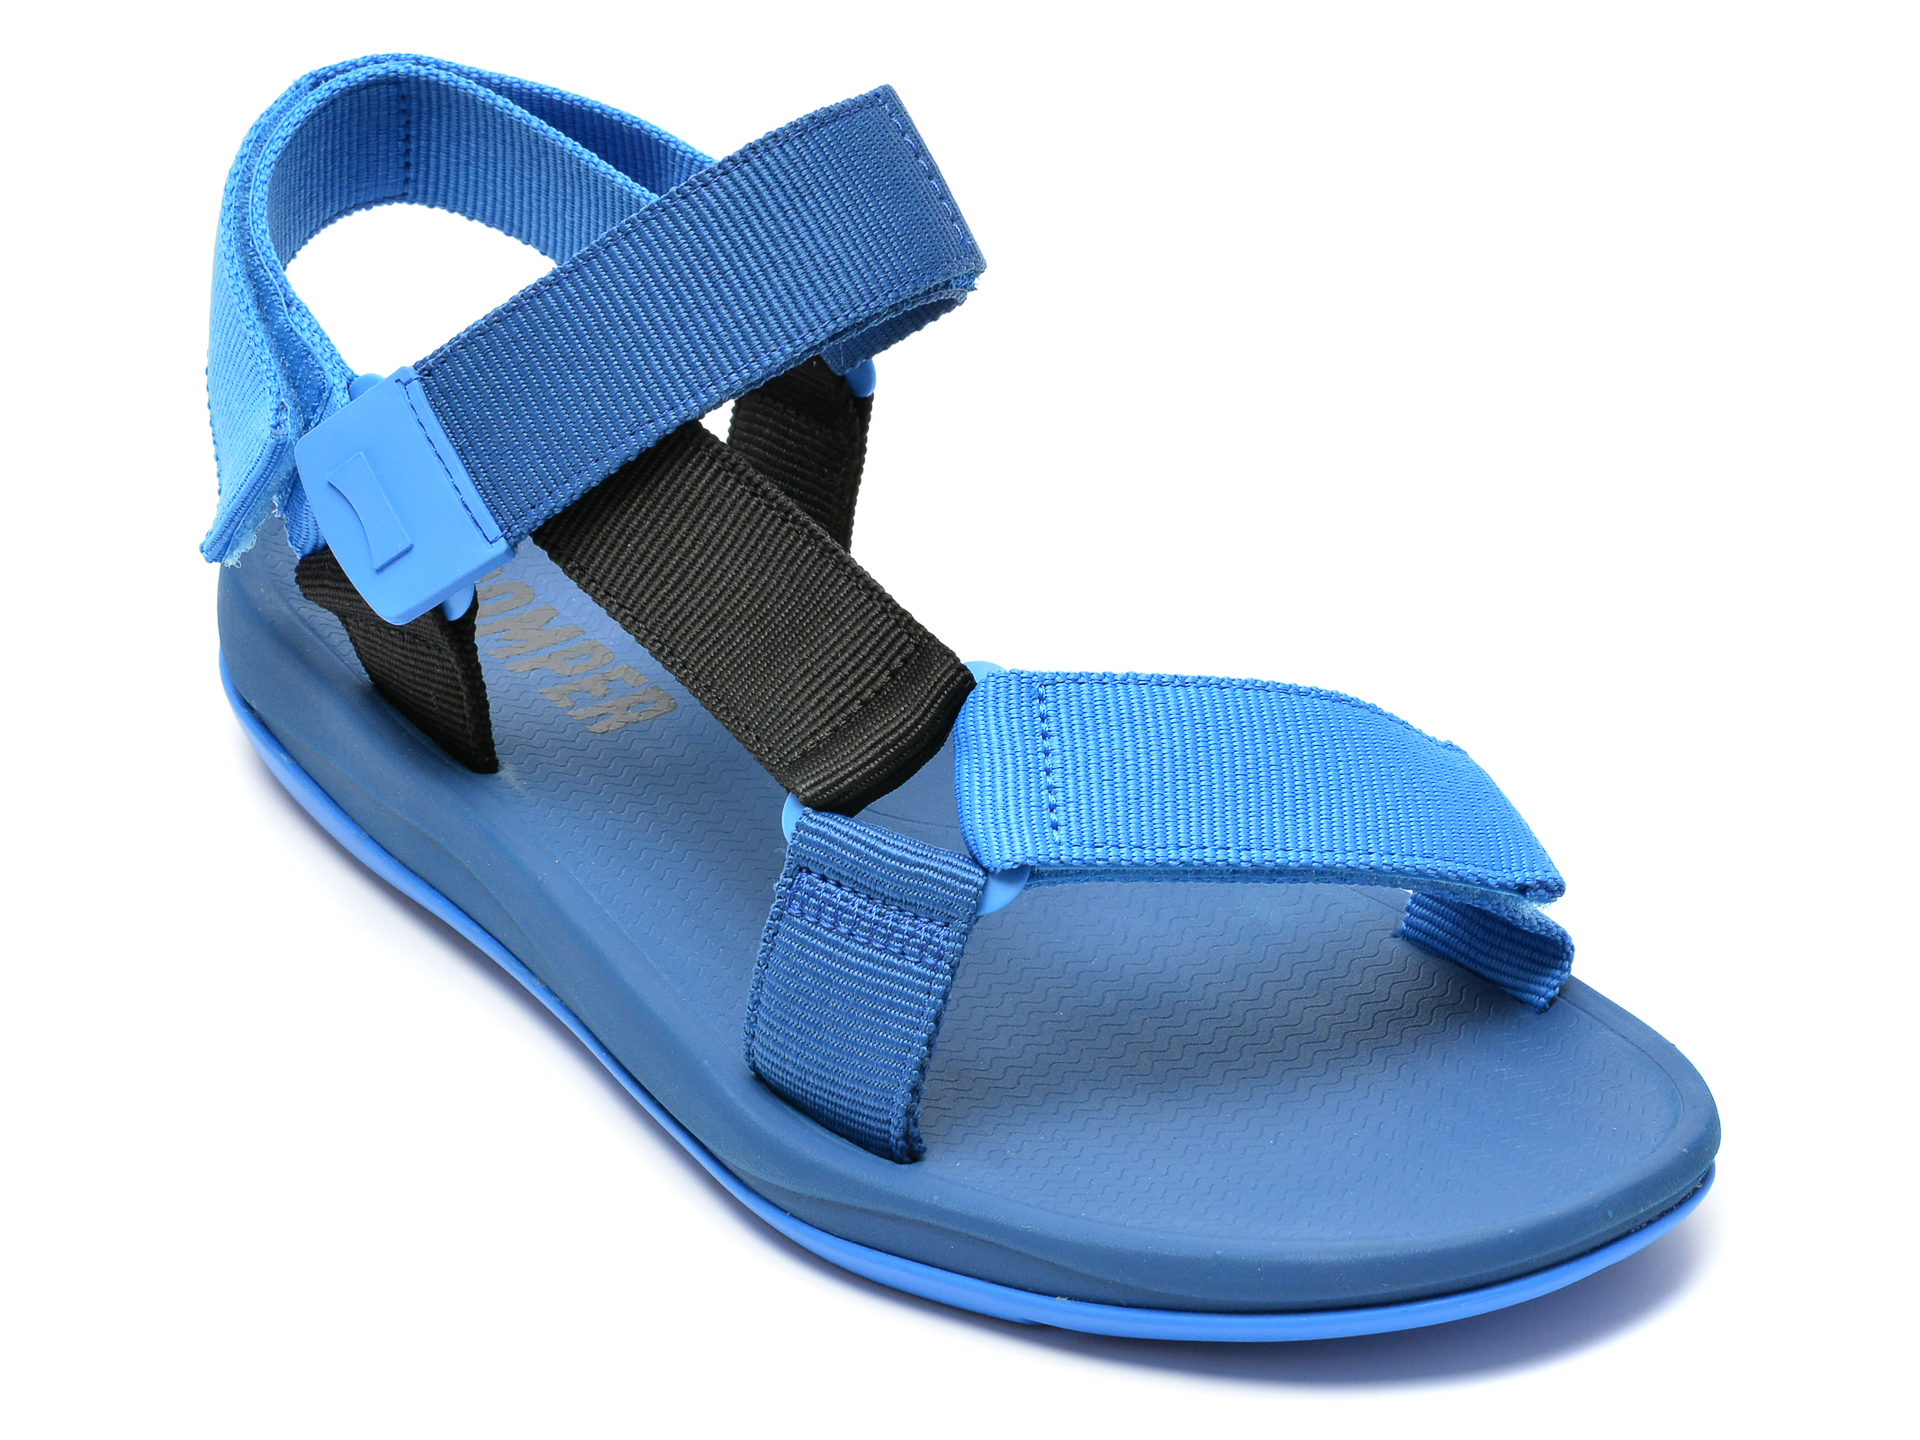 Sandale CAMPER albastre, K100539, din material textil Camper